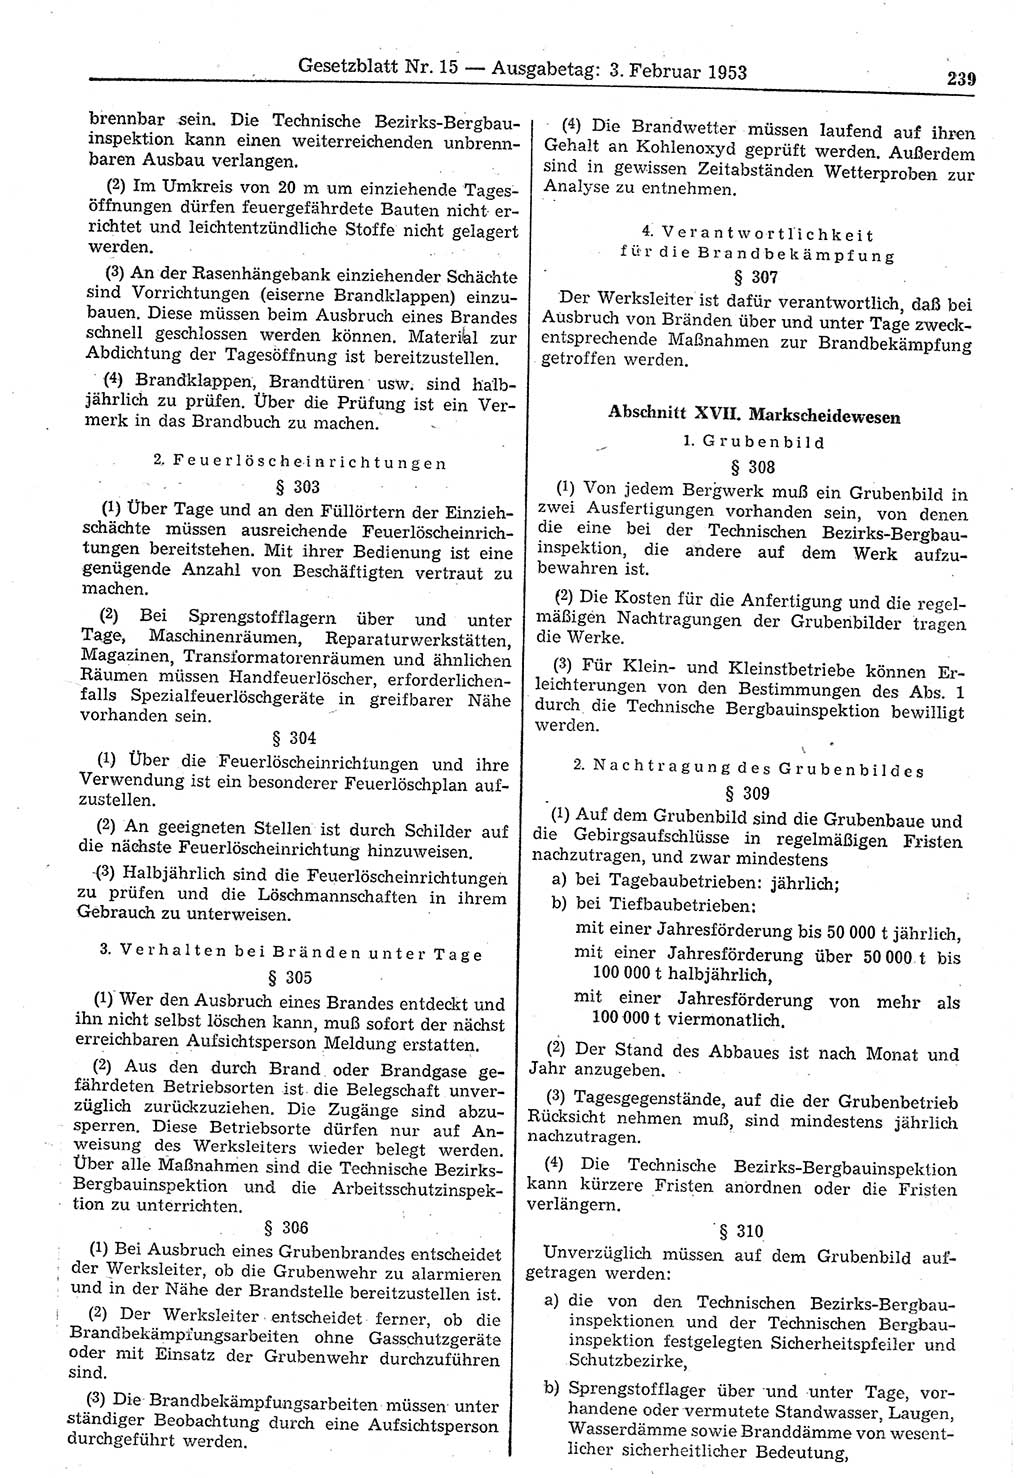 Gesetzblatt (GBl.) der Deutschen Demokratischen Republik (DDR) 1953, Seite 239 (GBl. DDR 1953, S. 239)